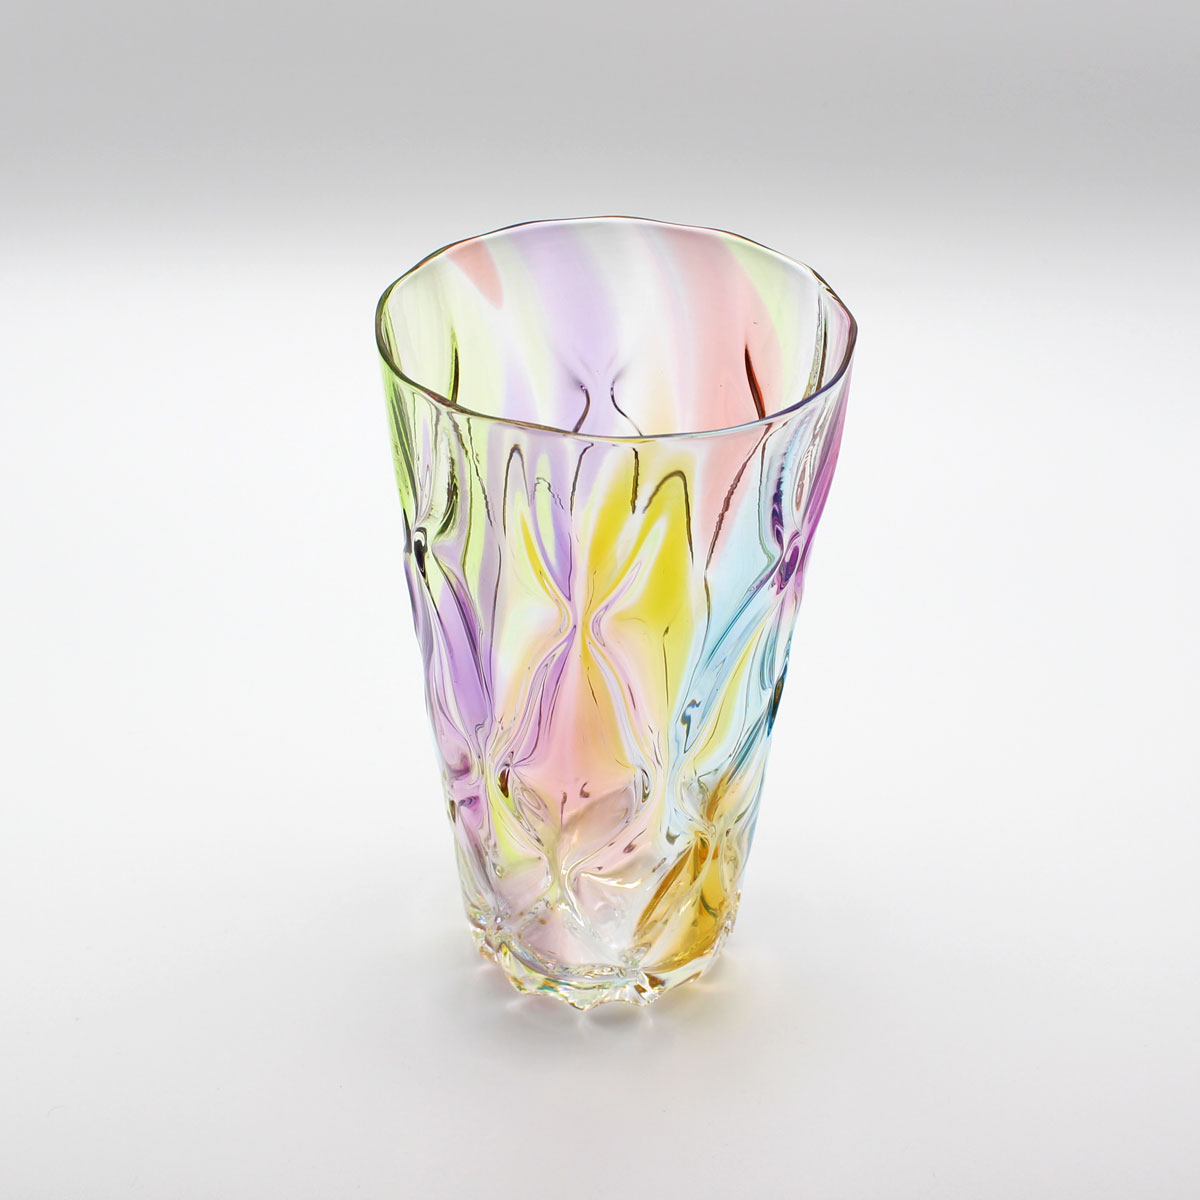 カラフルが美しい 光と色を楽しむレトロなグラス glasscalico グラスキャリコ ハンドメイド ガラス酒器 おしゃれ 割引 プリズム レトロ ロンググラス 人気海外一番 プレゼント ギフト